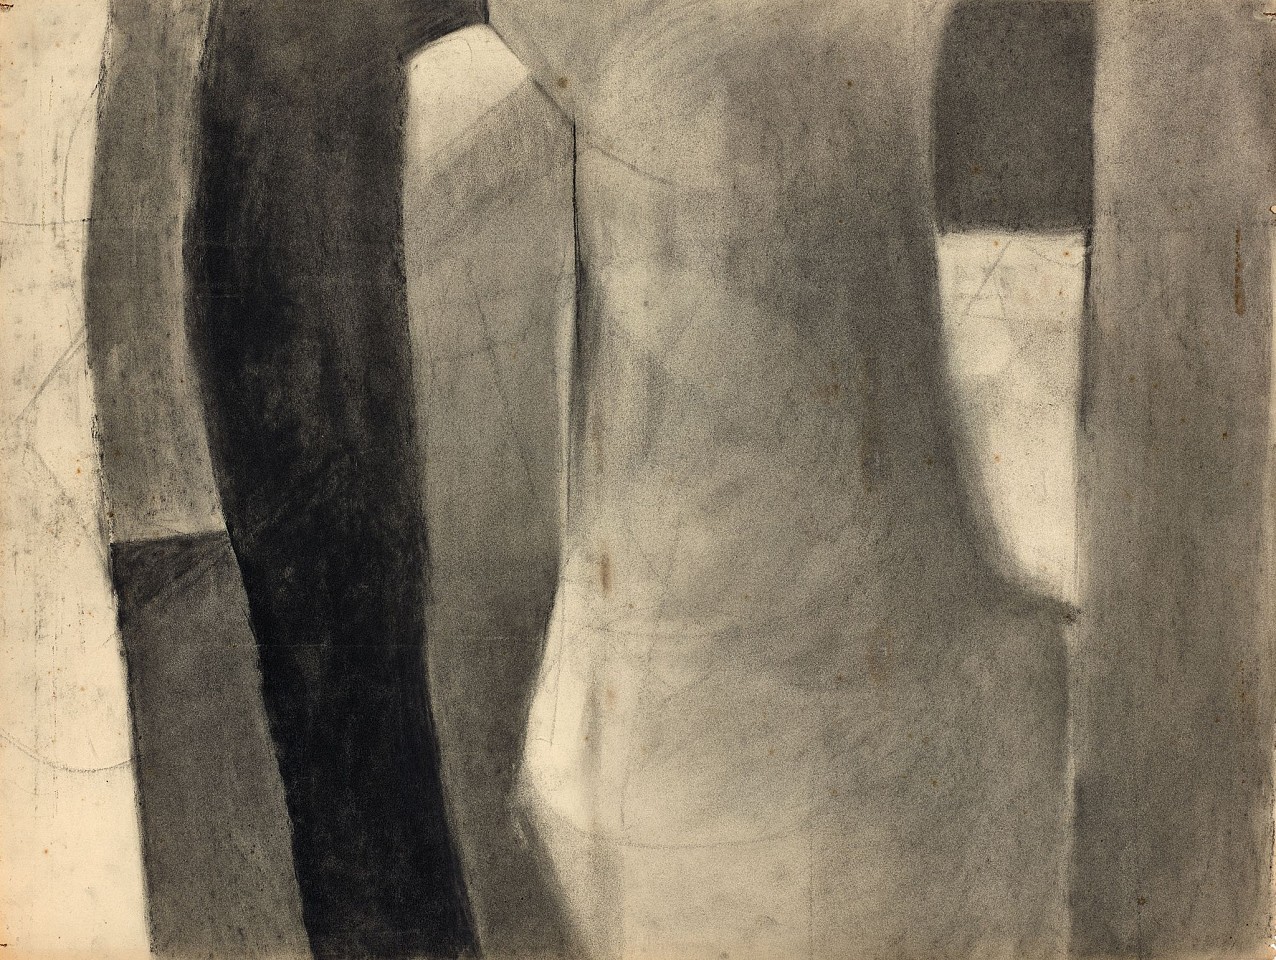 Charlotte Park, Untitled, c. 1952
Charcoal on paper, 18 x 24 in. (45.7 x 61 cm)
PAR-00465